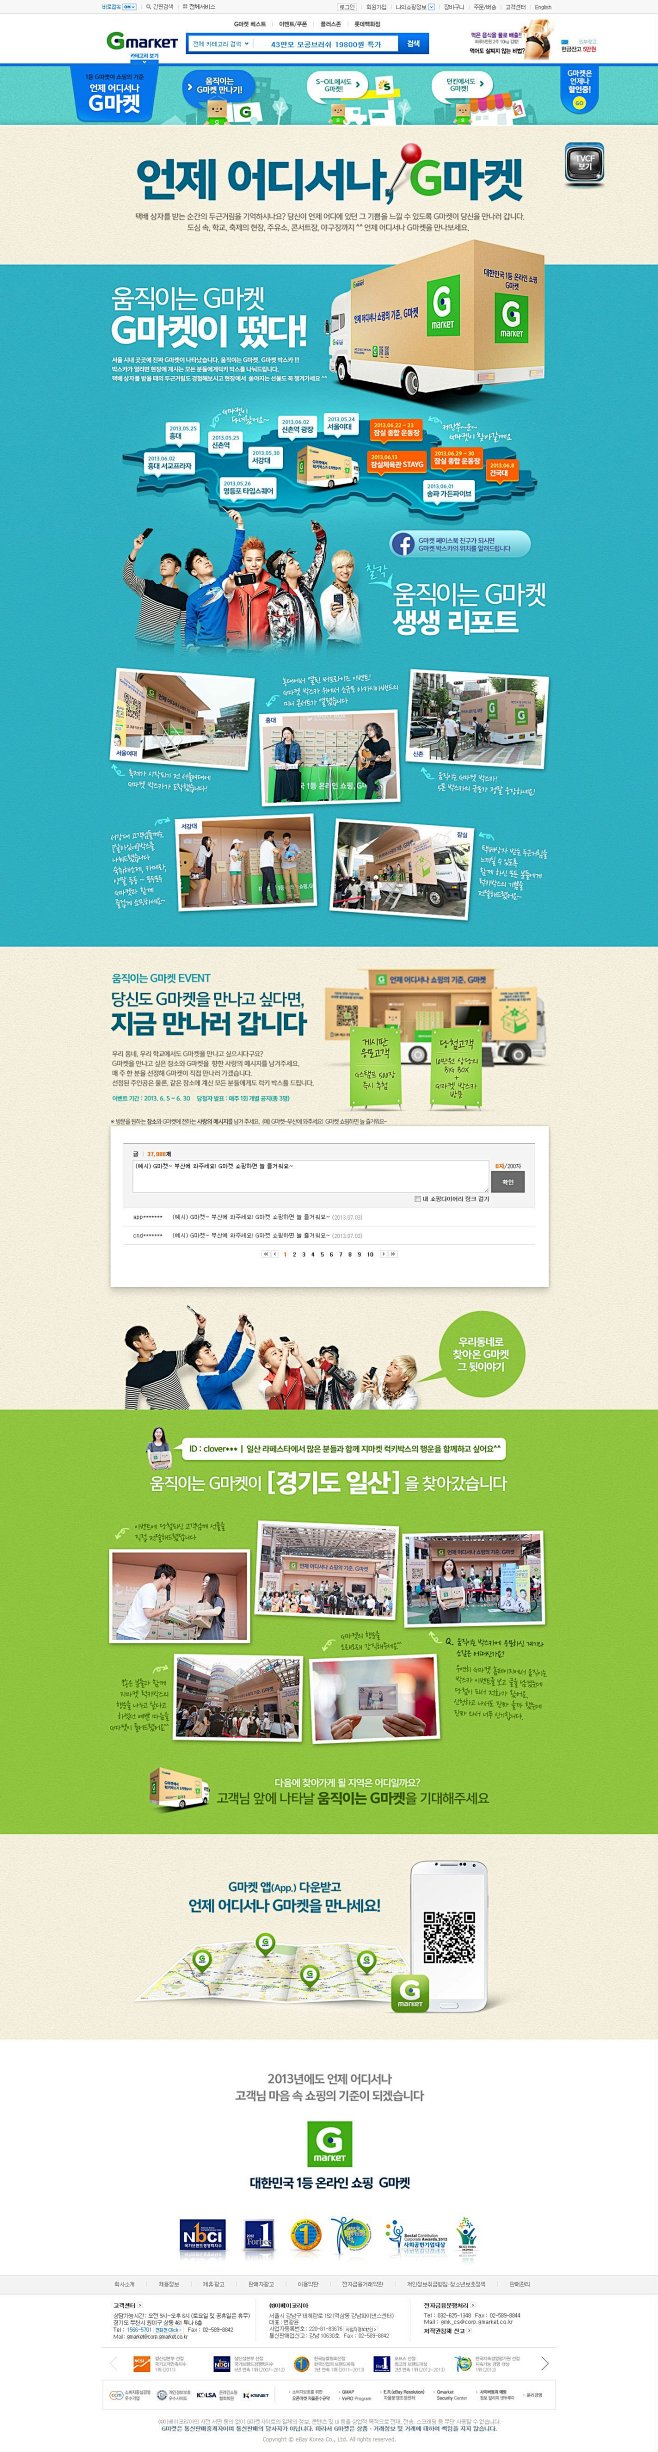 韩国Gmarket活动专题页面